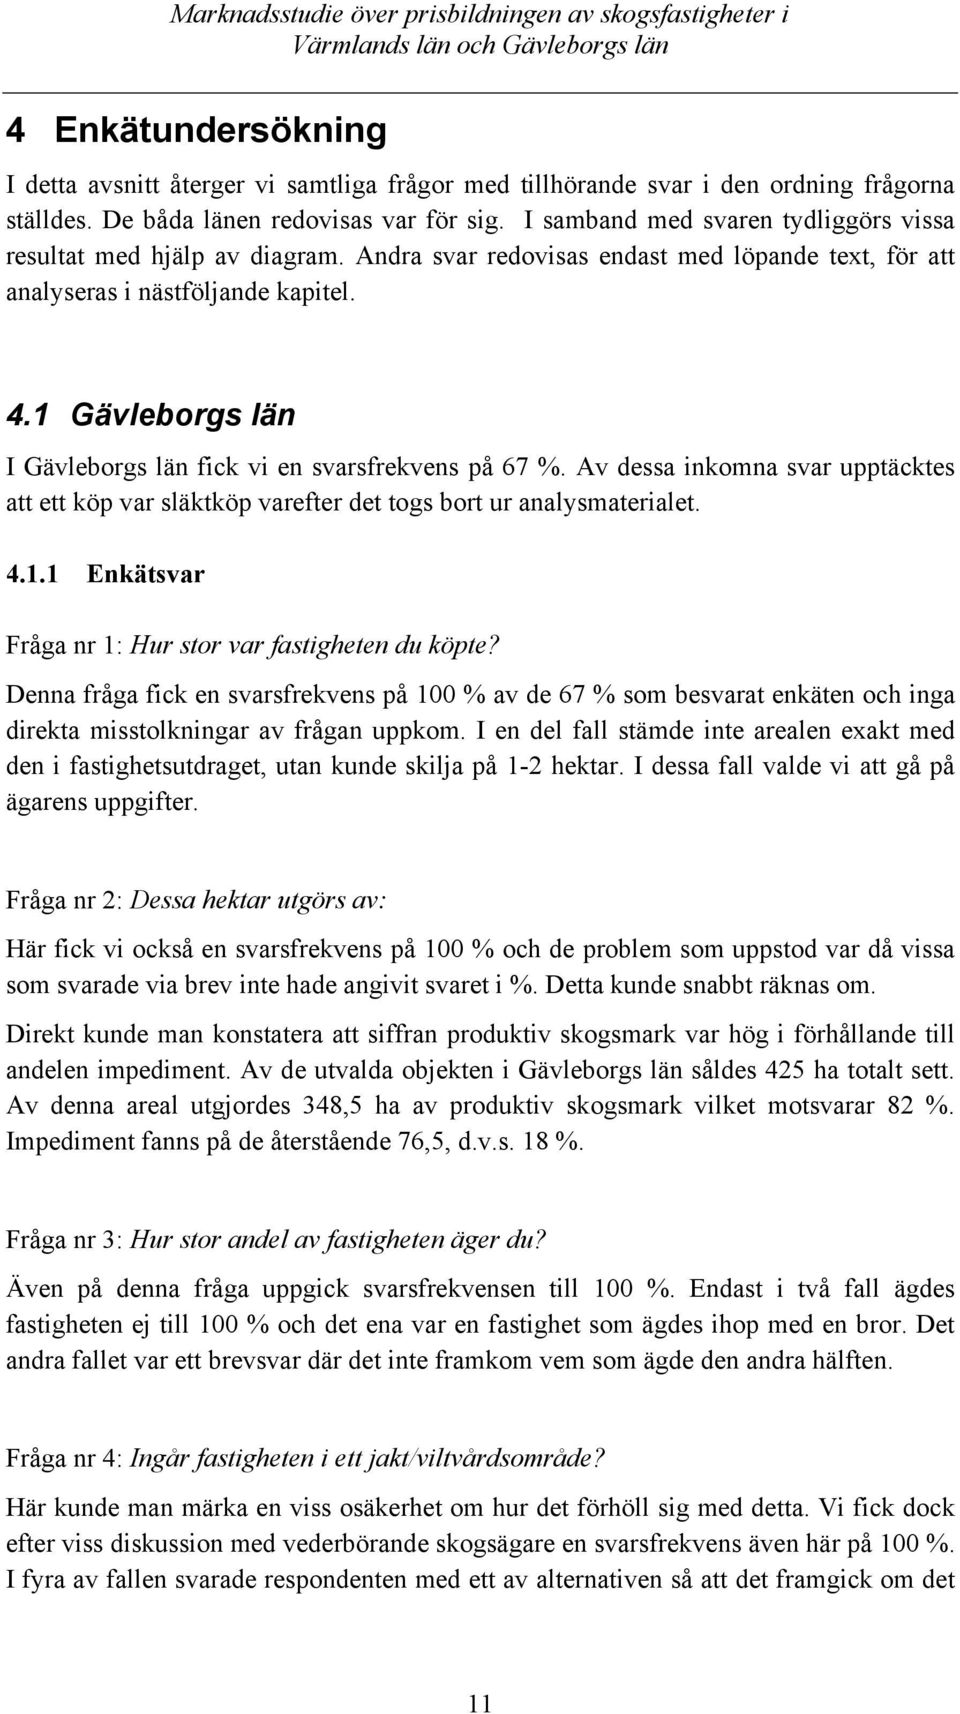 1 Gävleborgs län I Gävleborgs län fick vi en svarsfrekvens på 67 %. Av dessa inkomna svar upptäcktes att ett köp var släktköp varefter det togs bort ur analysmaterialet. 4.1.1 Enkätsvar Fråga nr 1: Hur stor var fastigheten du köpte?